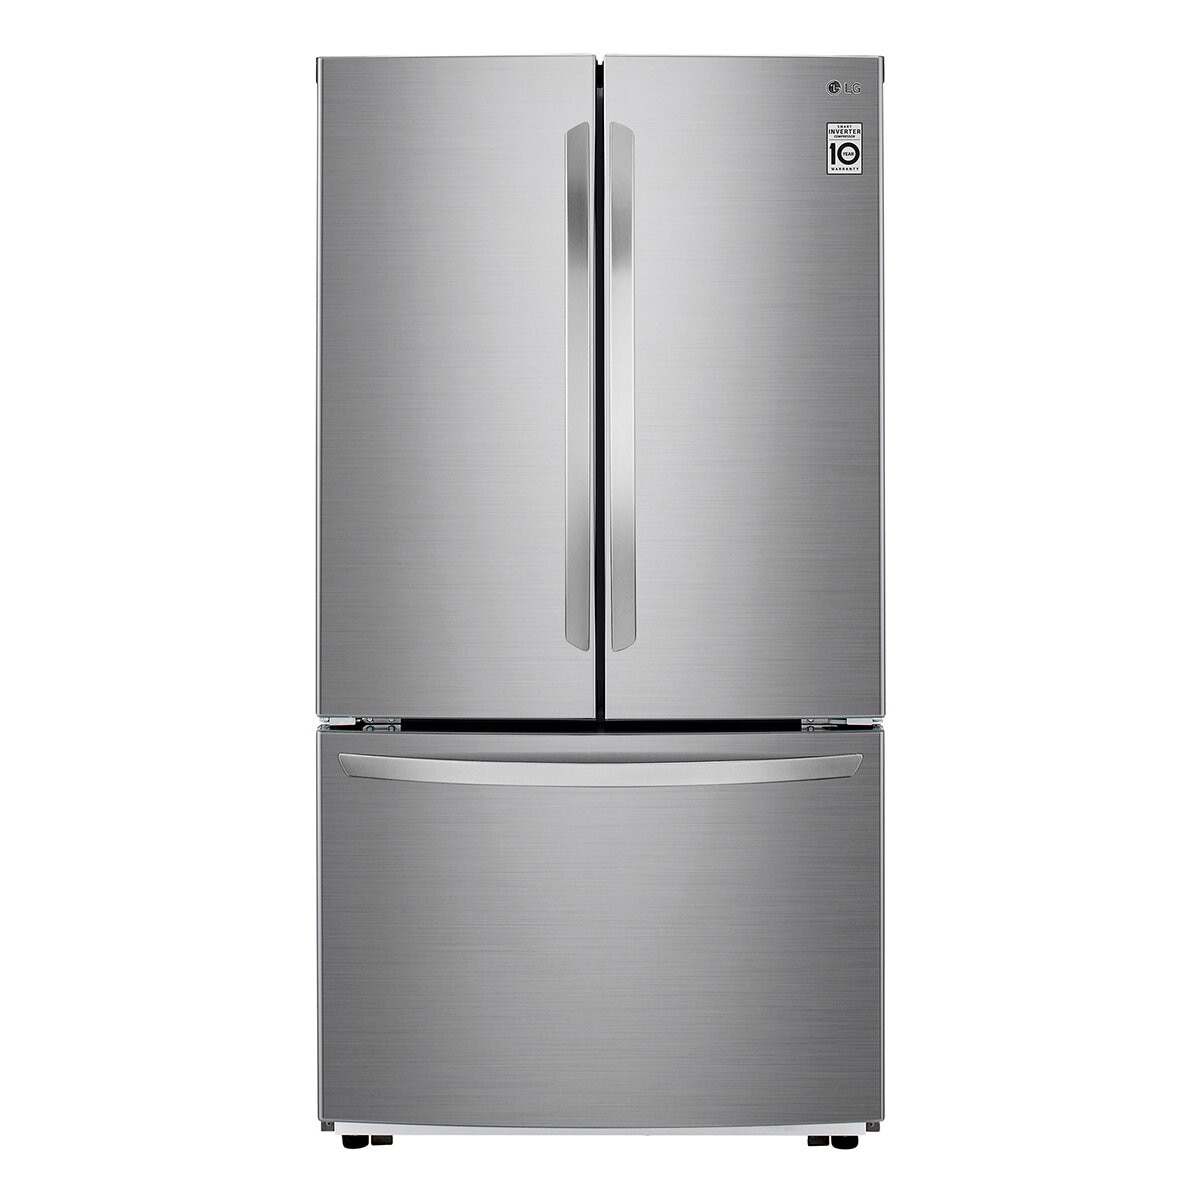 LG Refrigerador 29' French Door